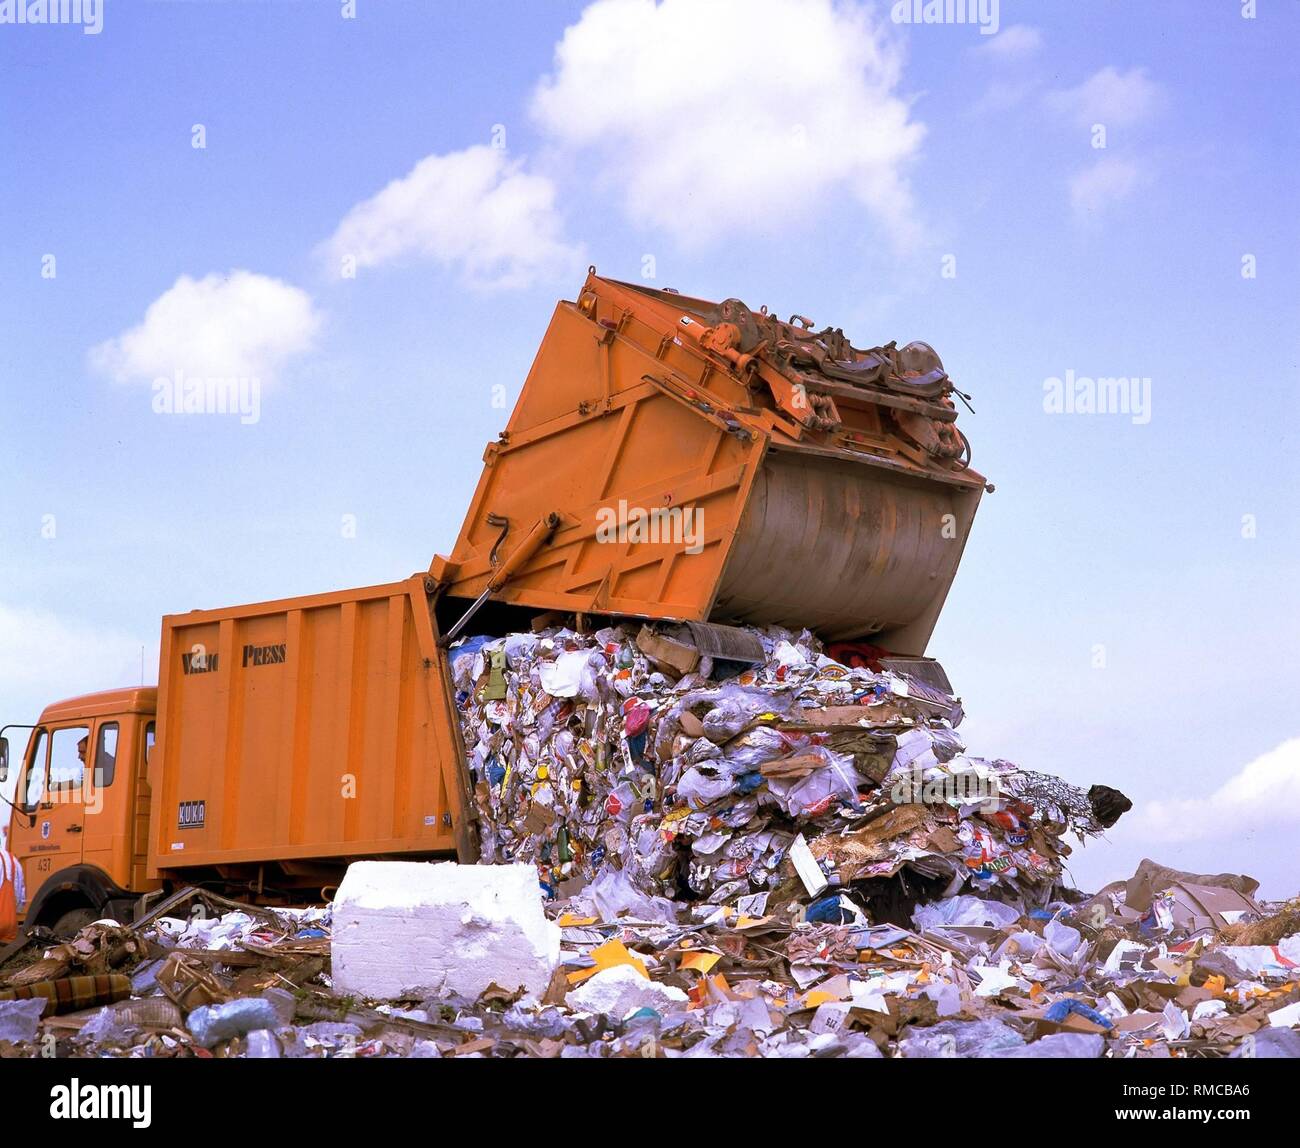 garbage-truck-unloading-waste-at-a-garbage-dump-in-north-rhine-westphalia-RMCBA6.jpg